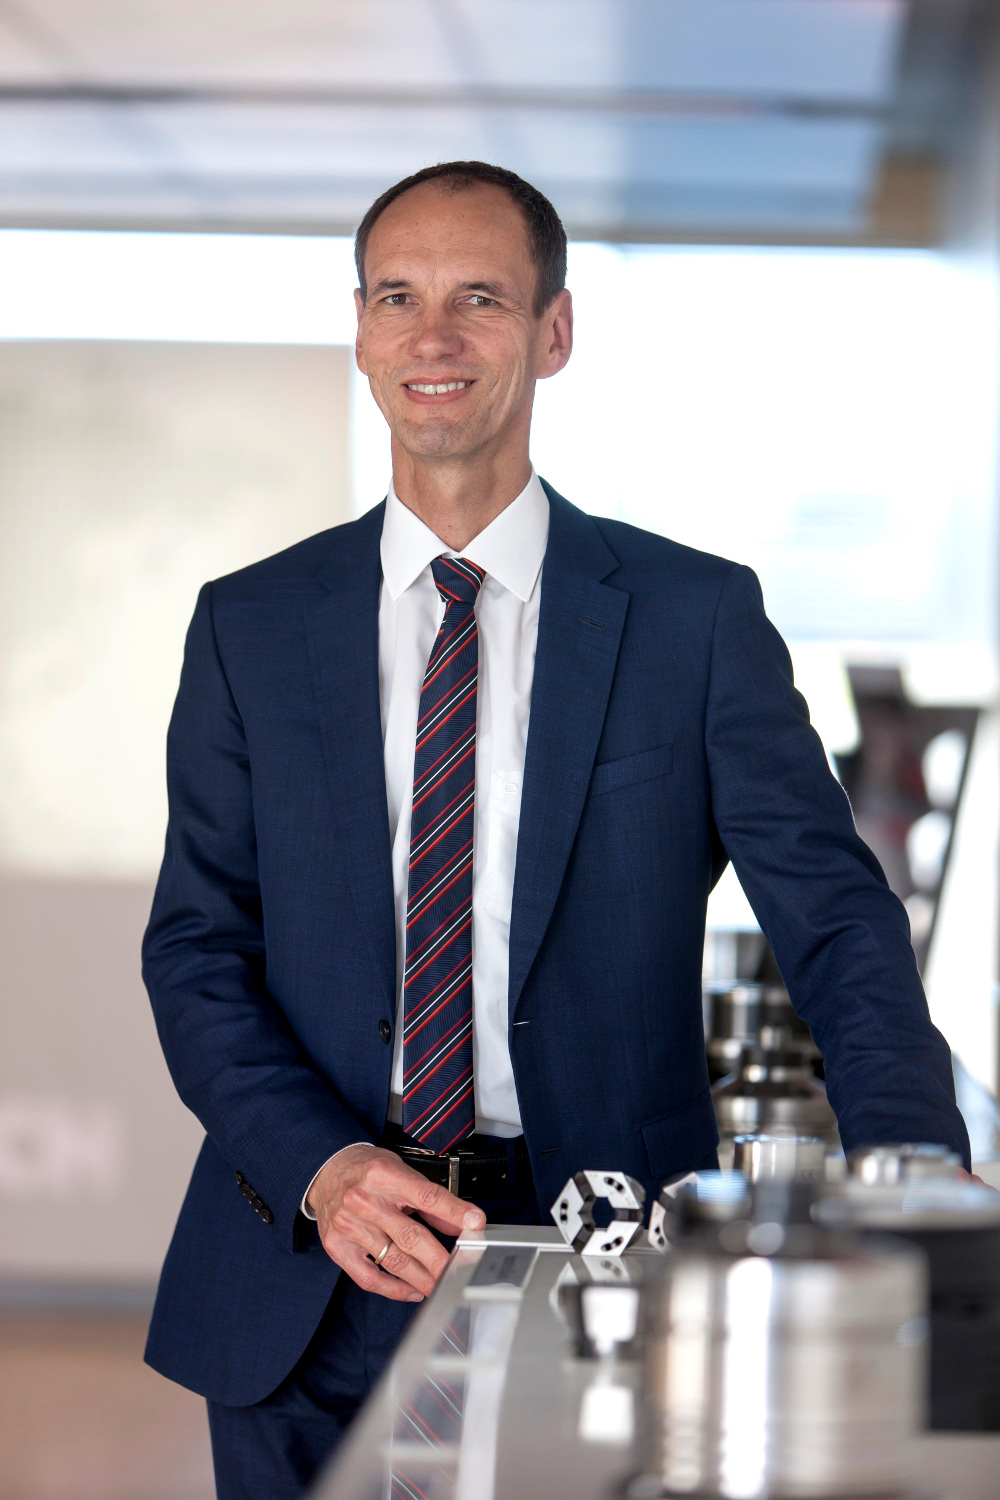 Dr. Achim Feinauer is a member of the Hainbuch top management.